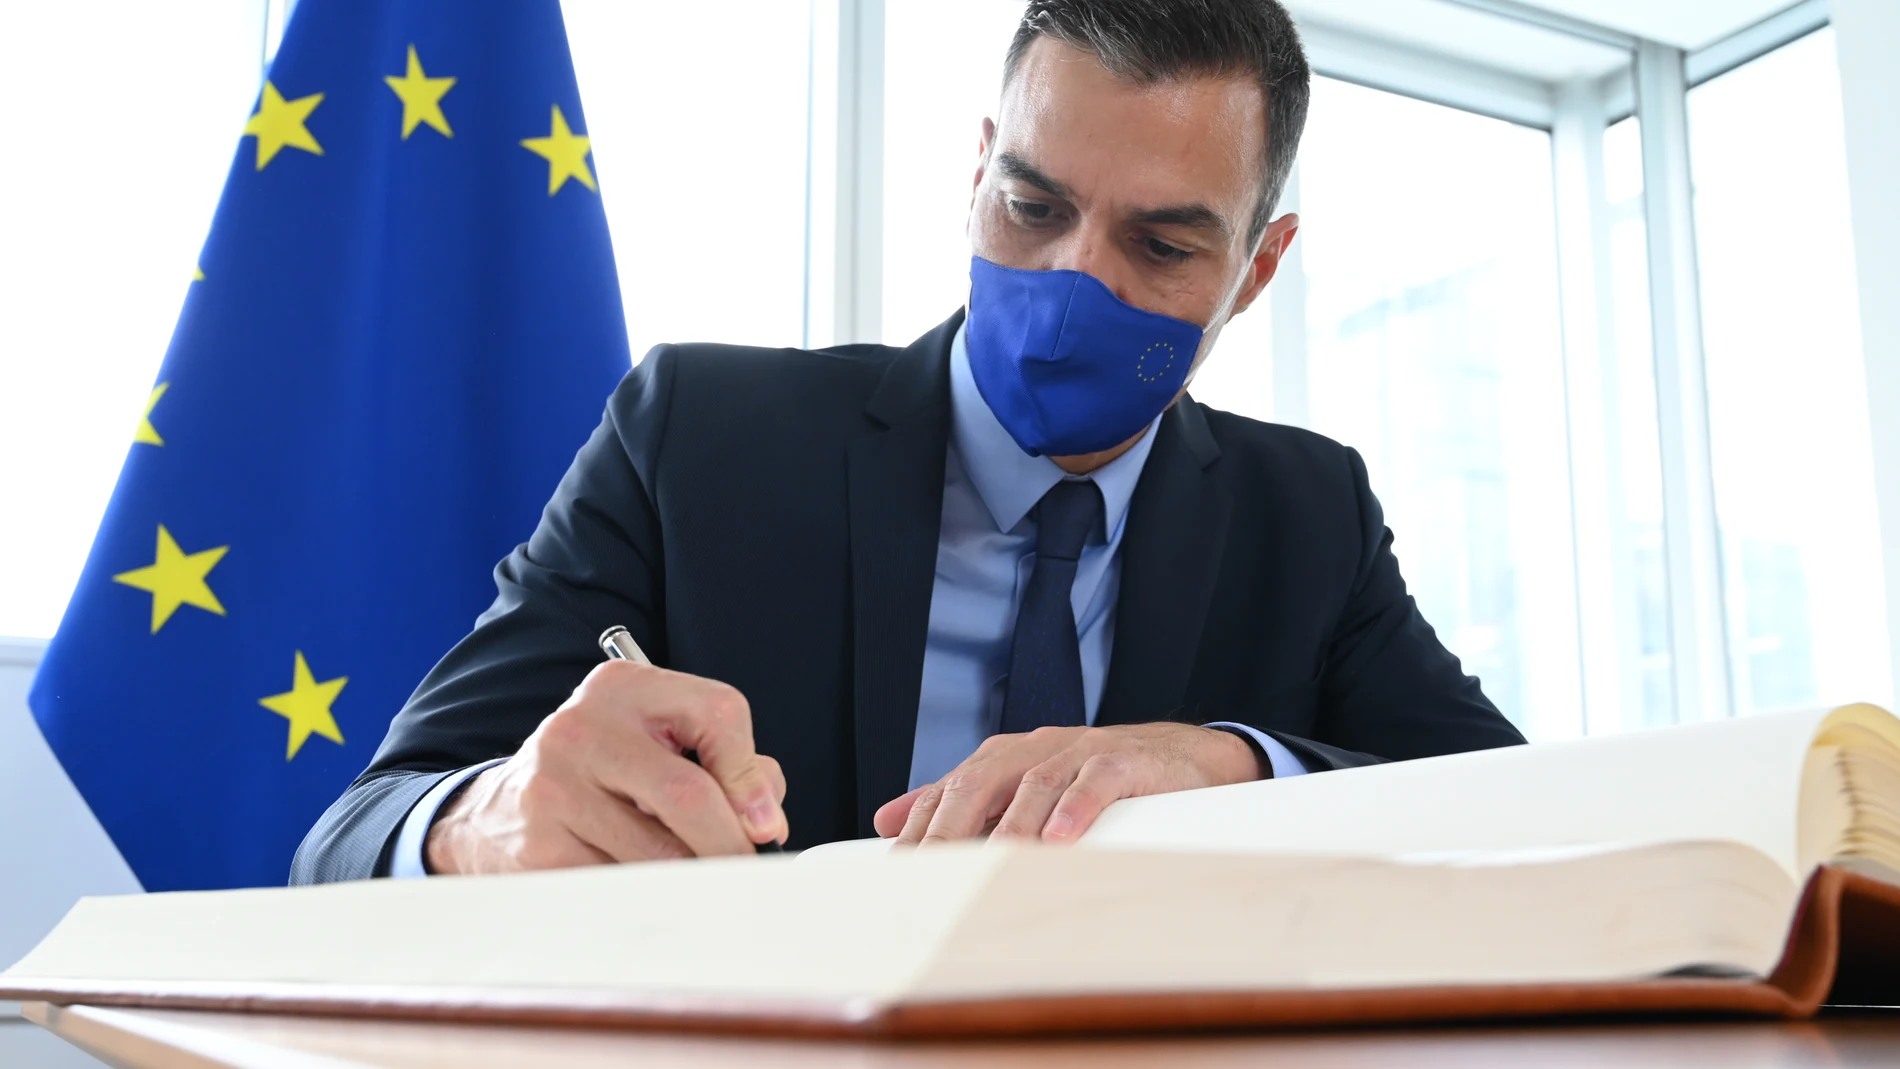 El presidente del Gobierno, Pedro Sánchez, firma el libro de visitas junto al presidente del Parlamento Europeo, David Sassoli.